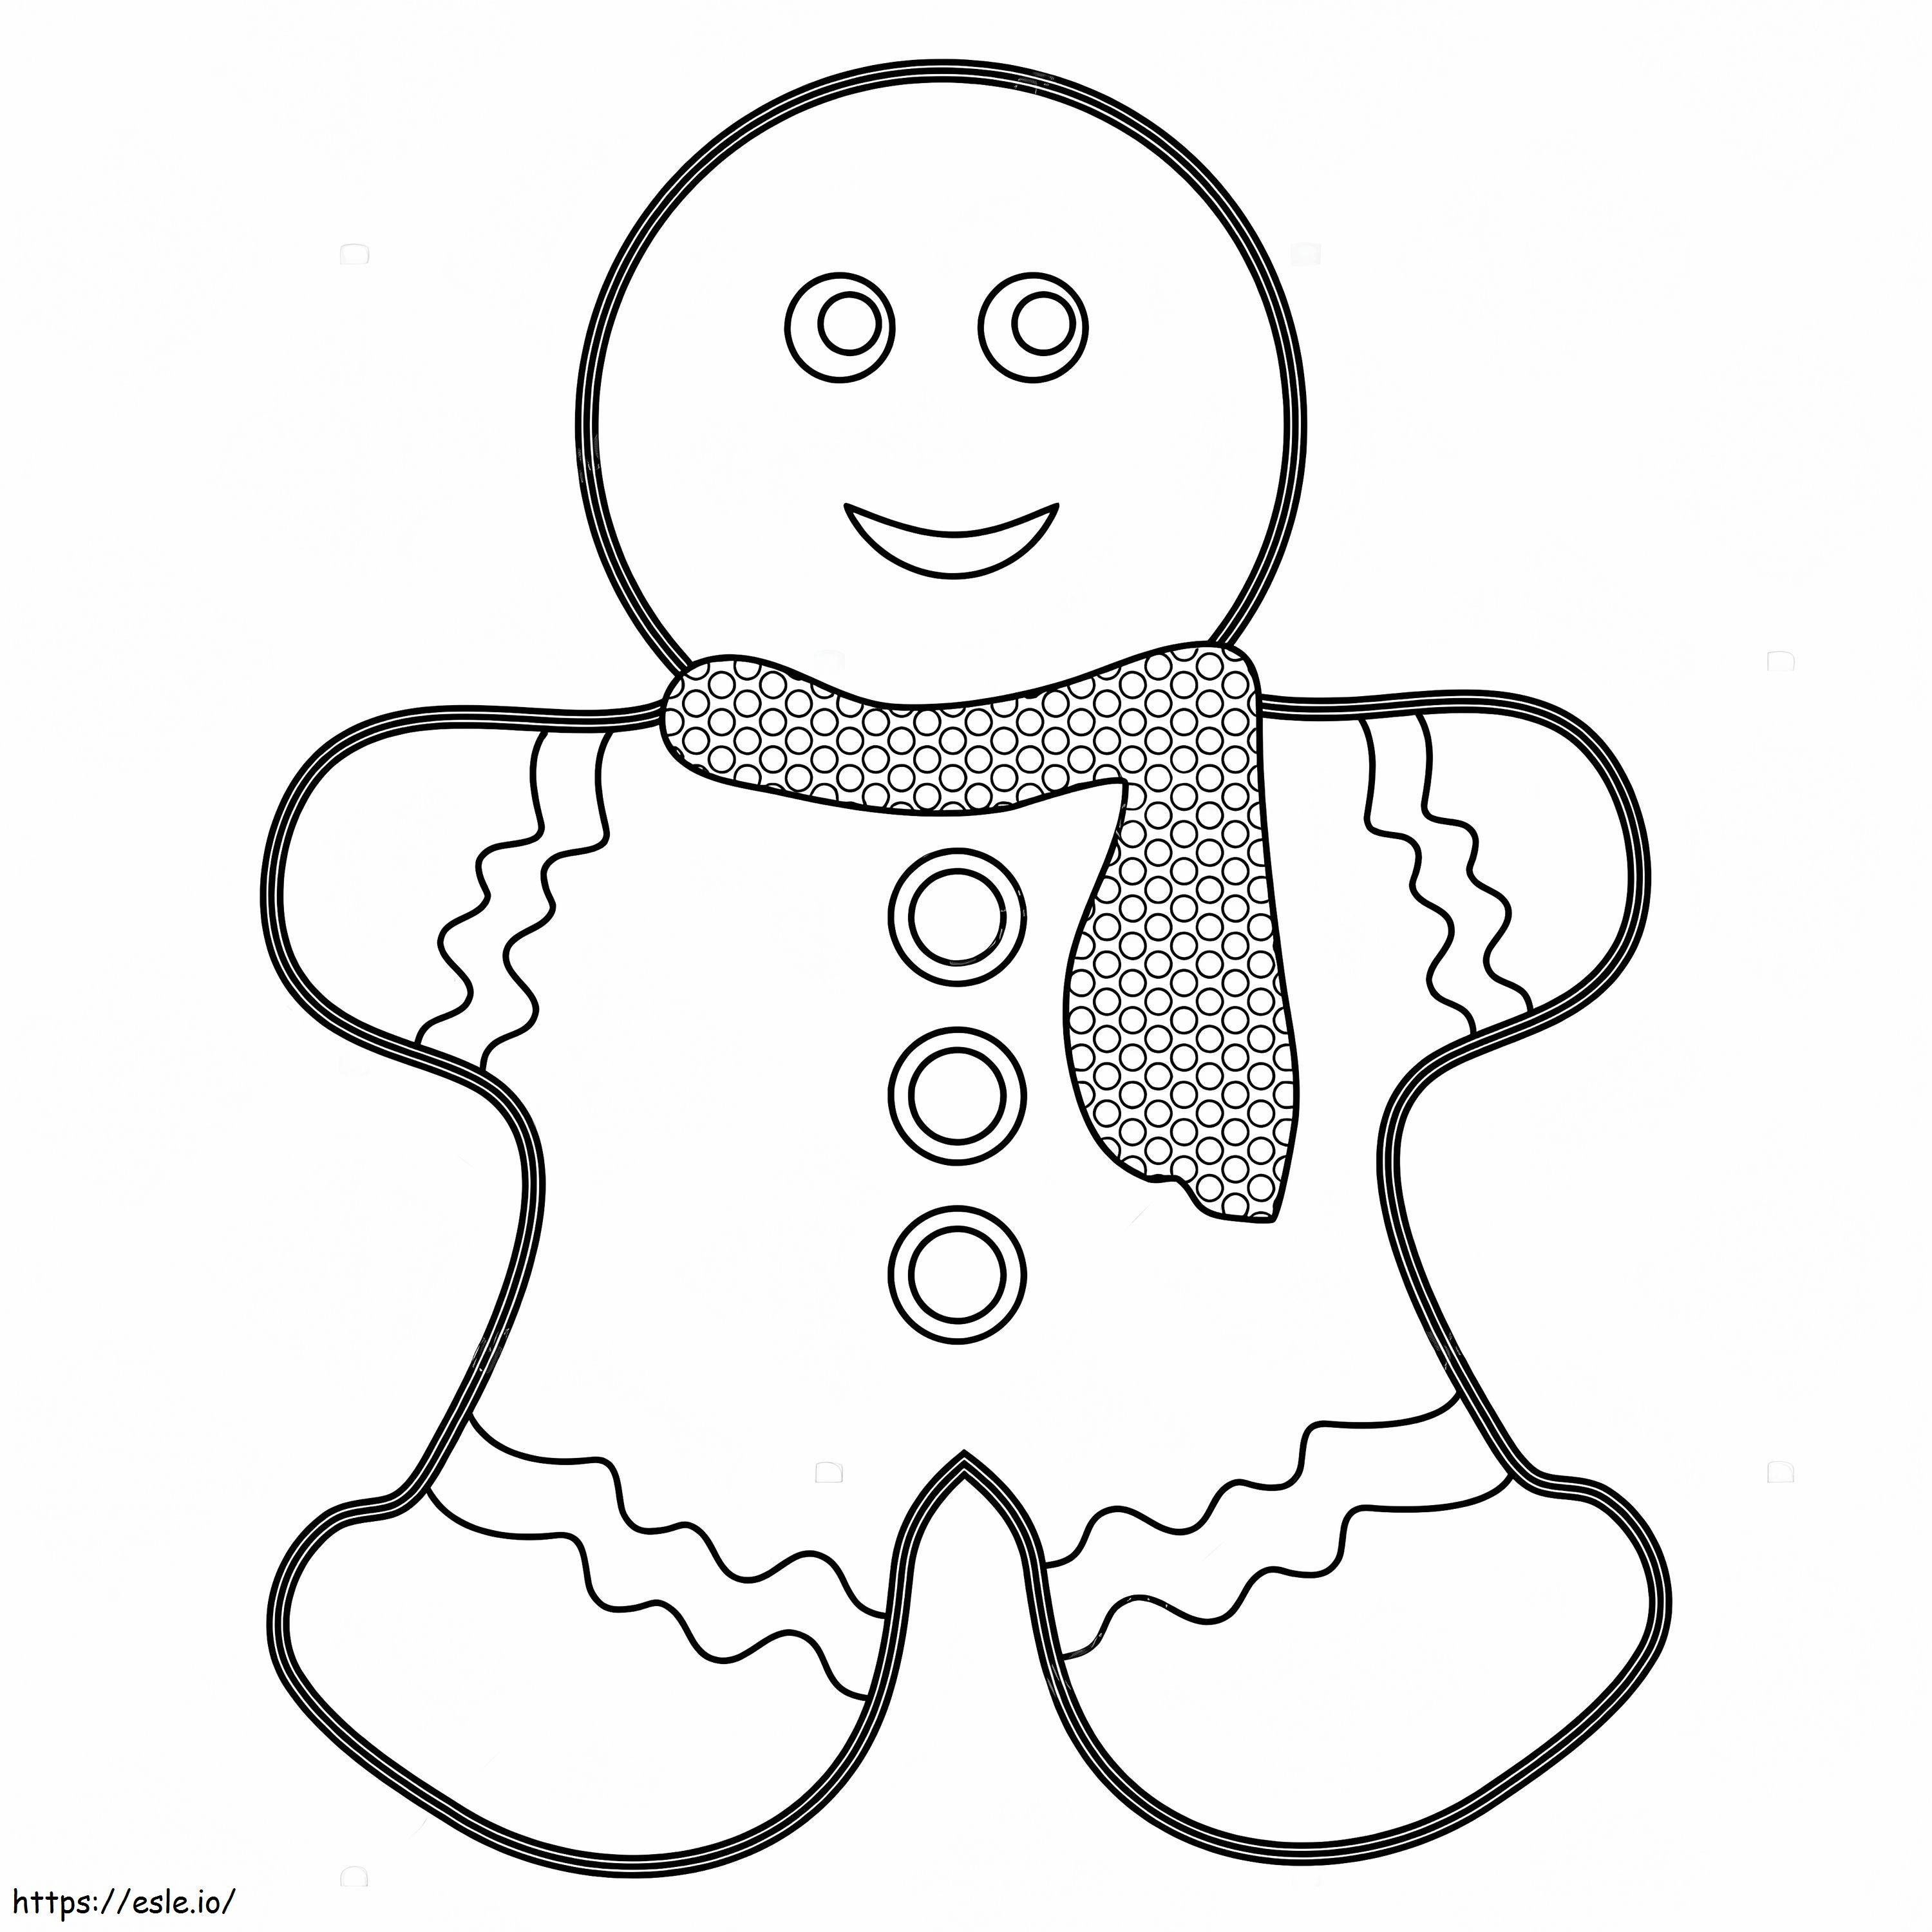 Homem Biscoito Inverno para colorir